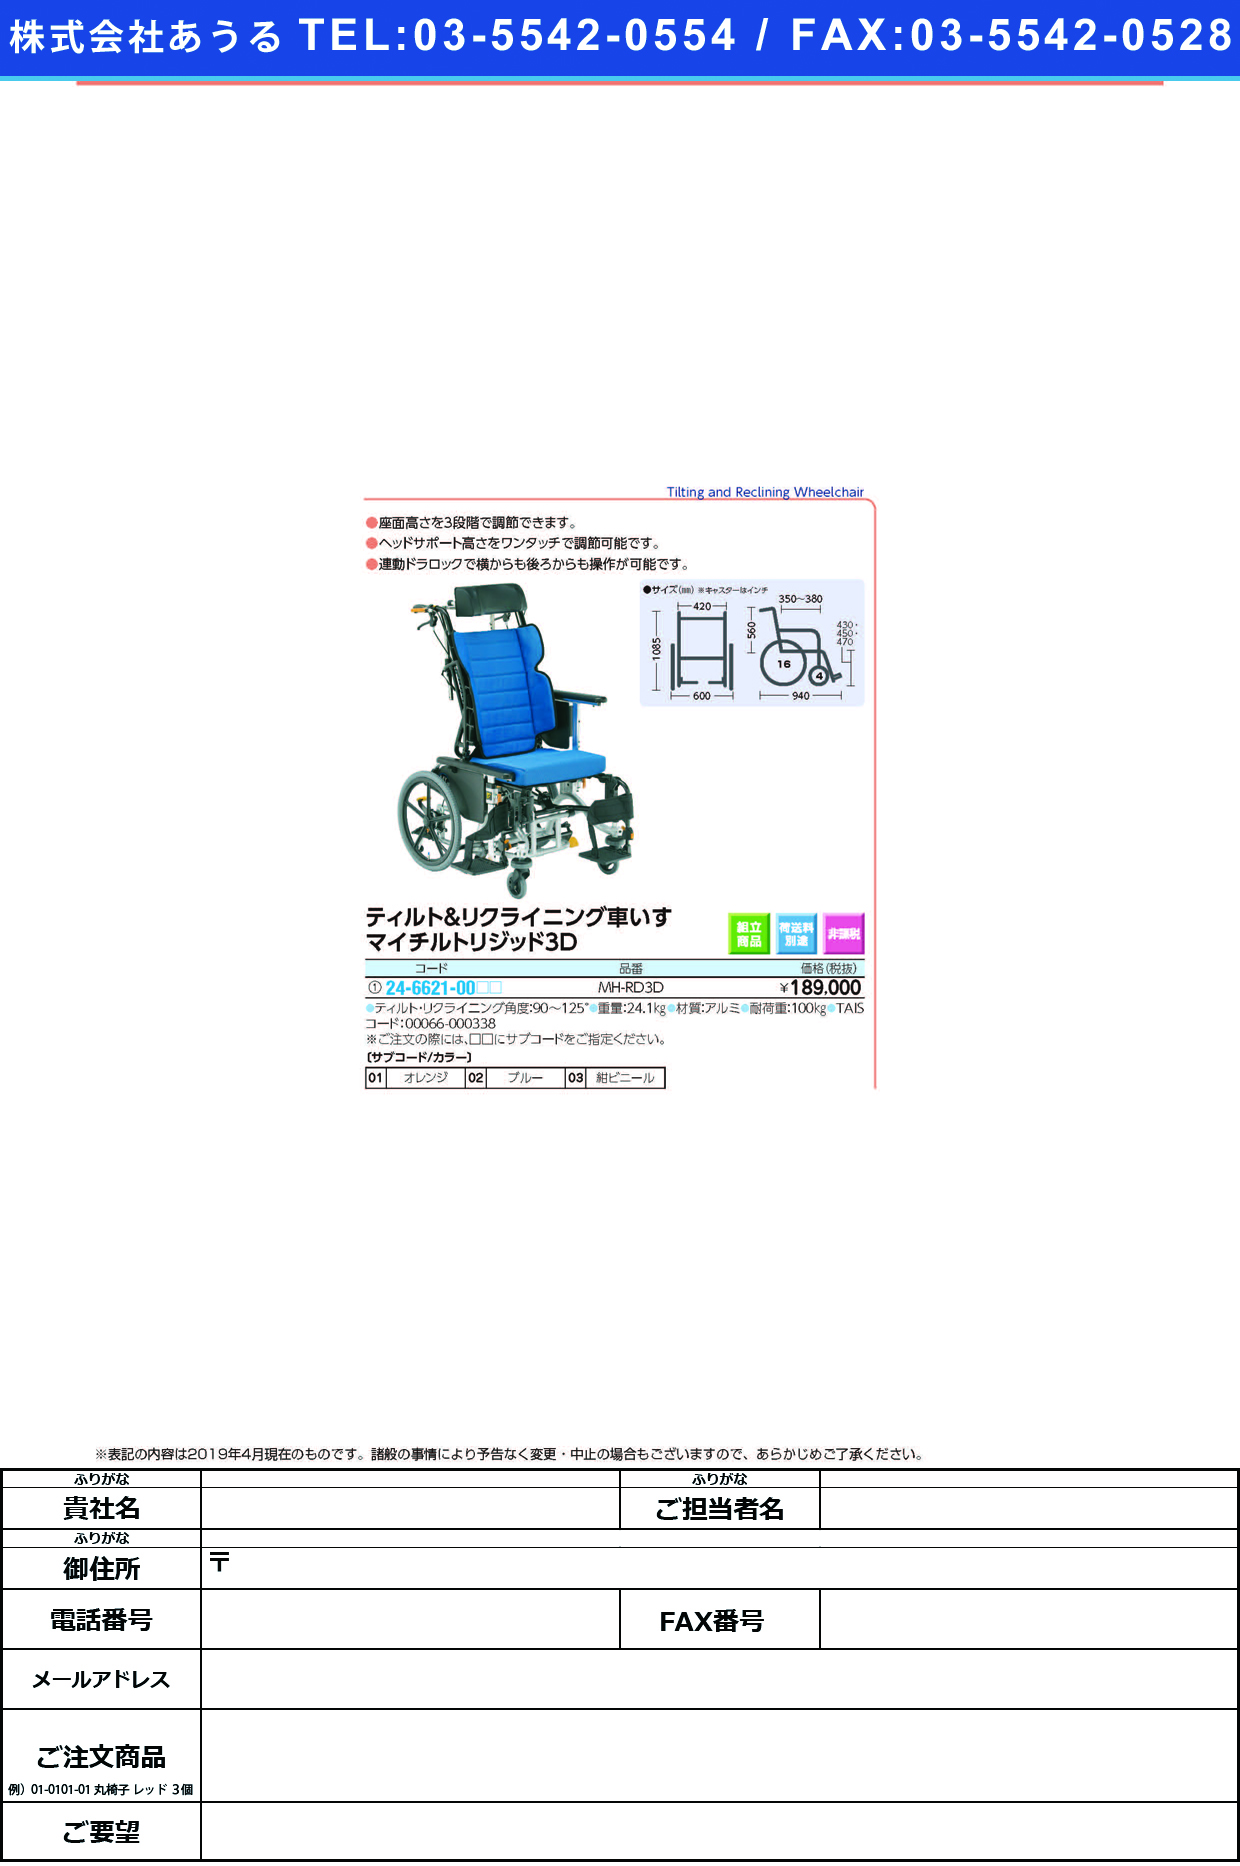 (24-6621-00)車いすマイチルトリジッド３Ｄ MH-RD3D ｸﾙﾏｲｽﾏｲﾁﾙﾄﾘｼﾞｯﾄﾞ3D ブルー（Ｆ－２）(松永製作所)【1台単位】【2019年カタログ商品】